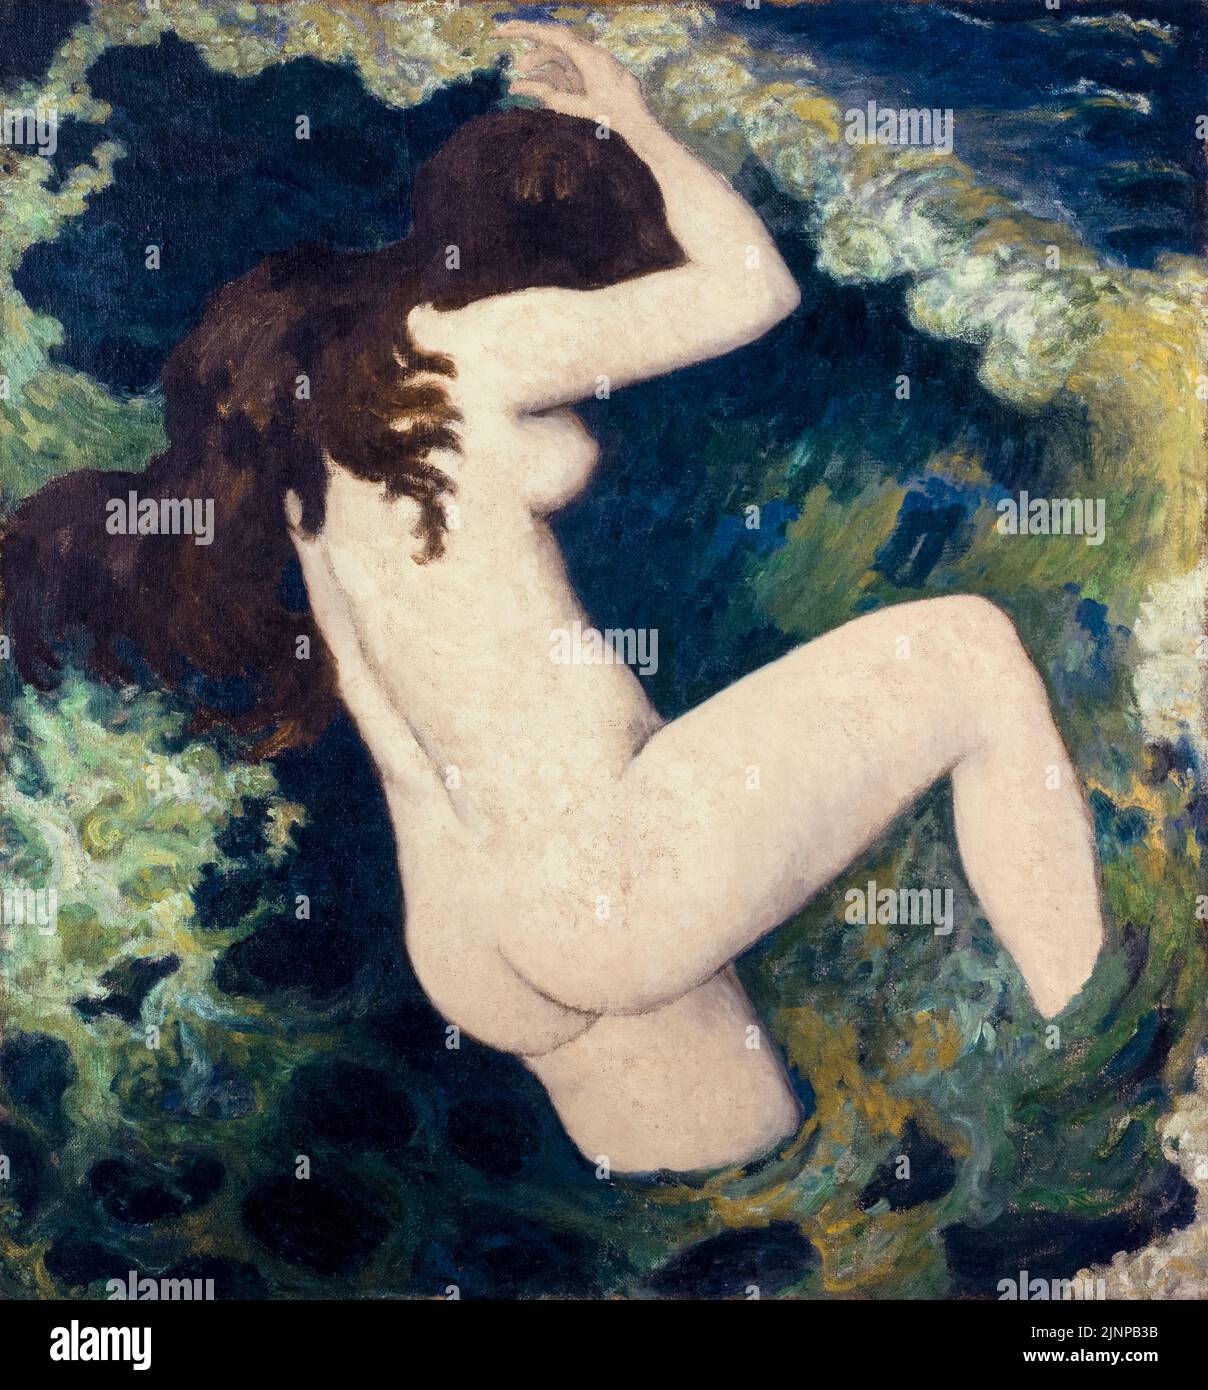 Aristide Maillol, la vague, peinture à l'huile sur toile, vers 1898 Banque D'Images